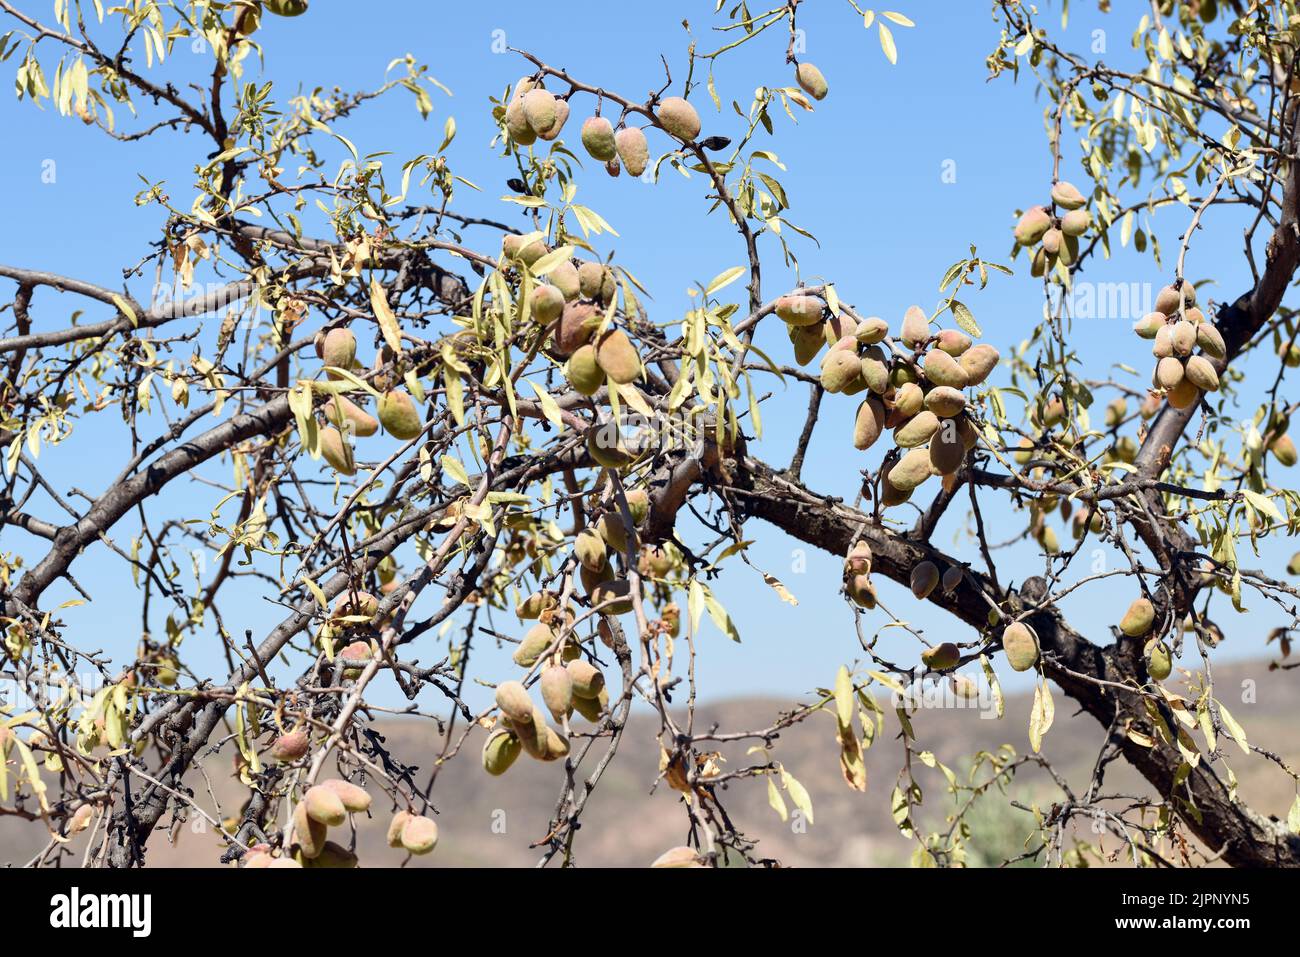 Detalle de las ramas del árbol del almendro cargadas de sus frutos a finales de agosto Stock Photo